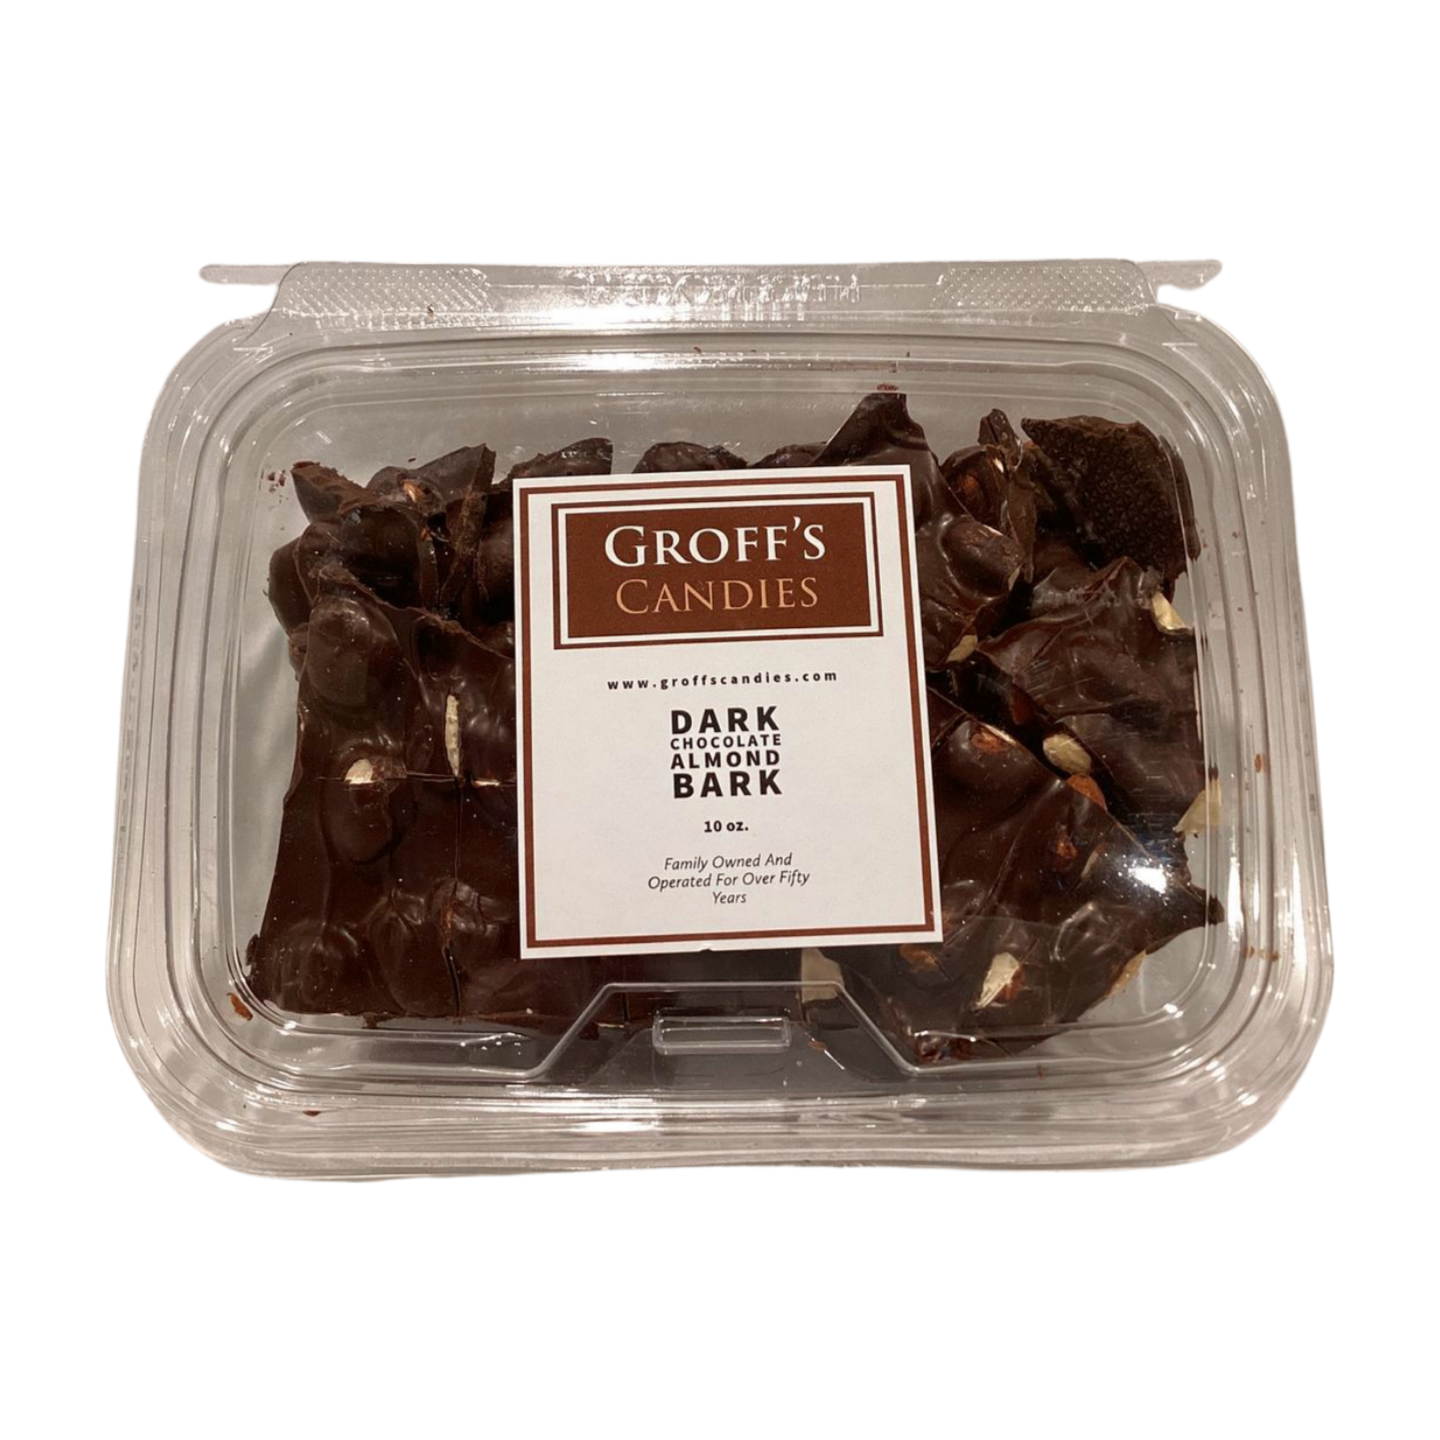 Groff’s Candies Dark Chocolate Almond Bark